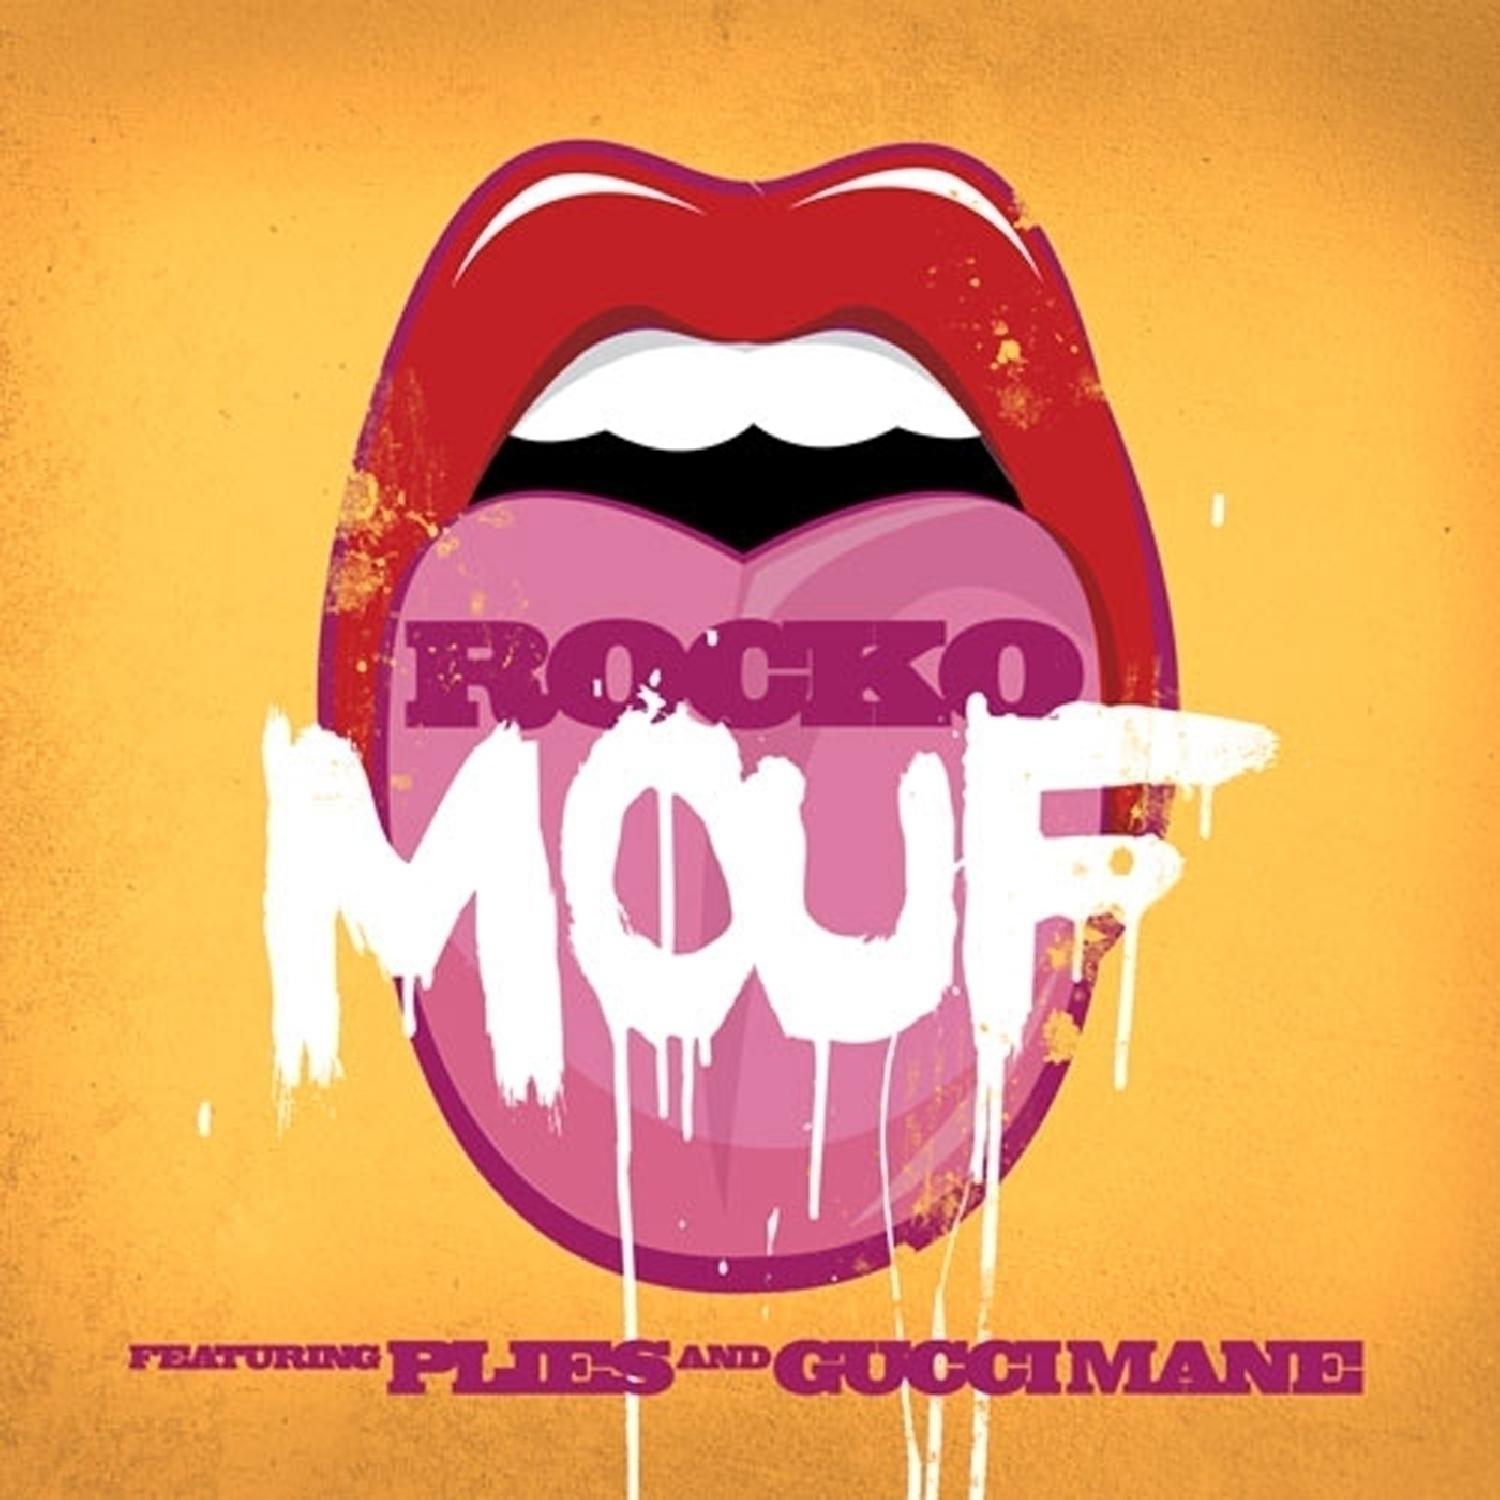 Mouf (feat. Plies & Gucci Mane) - Single